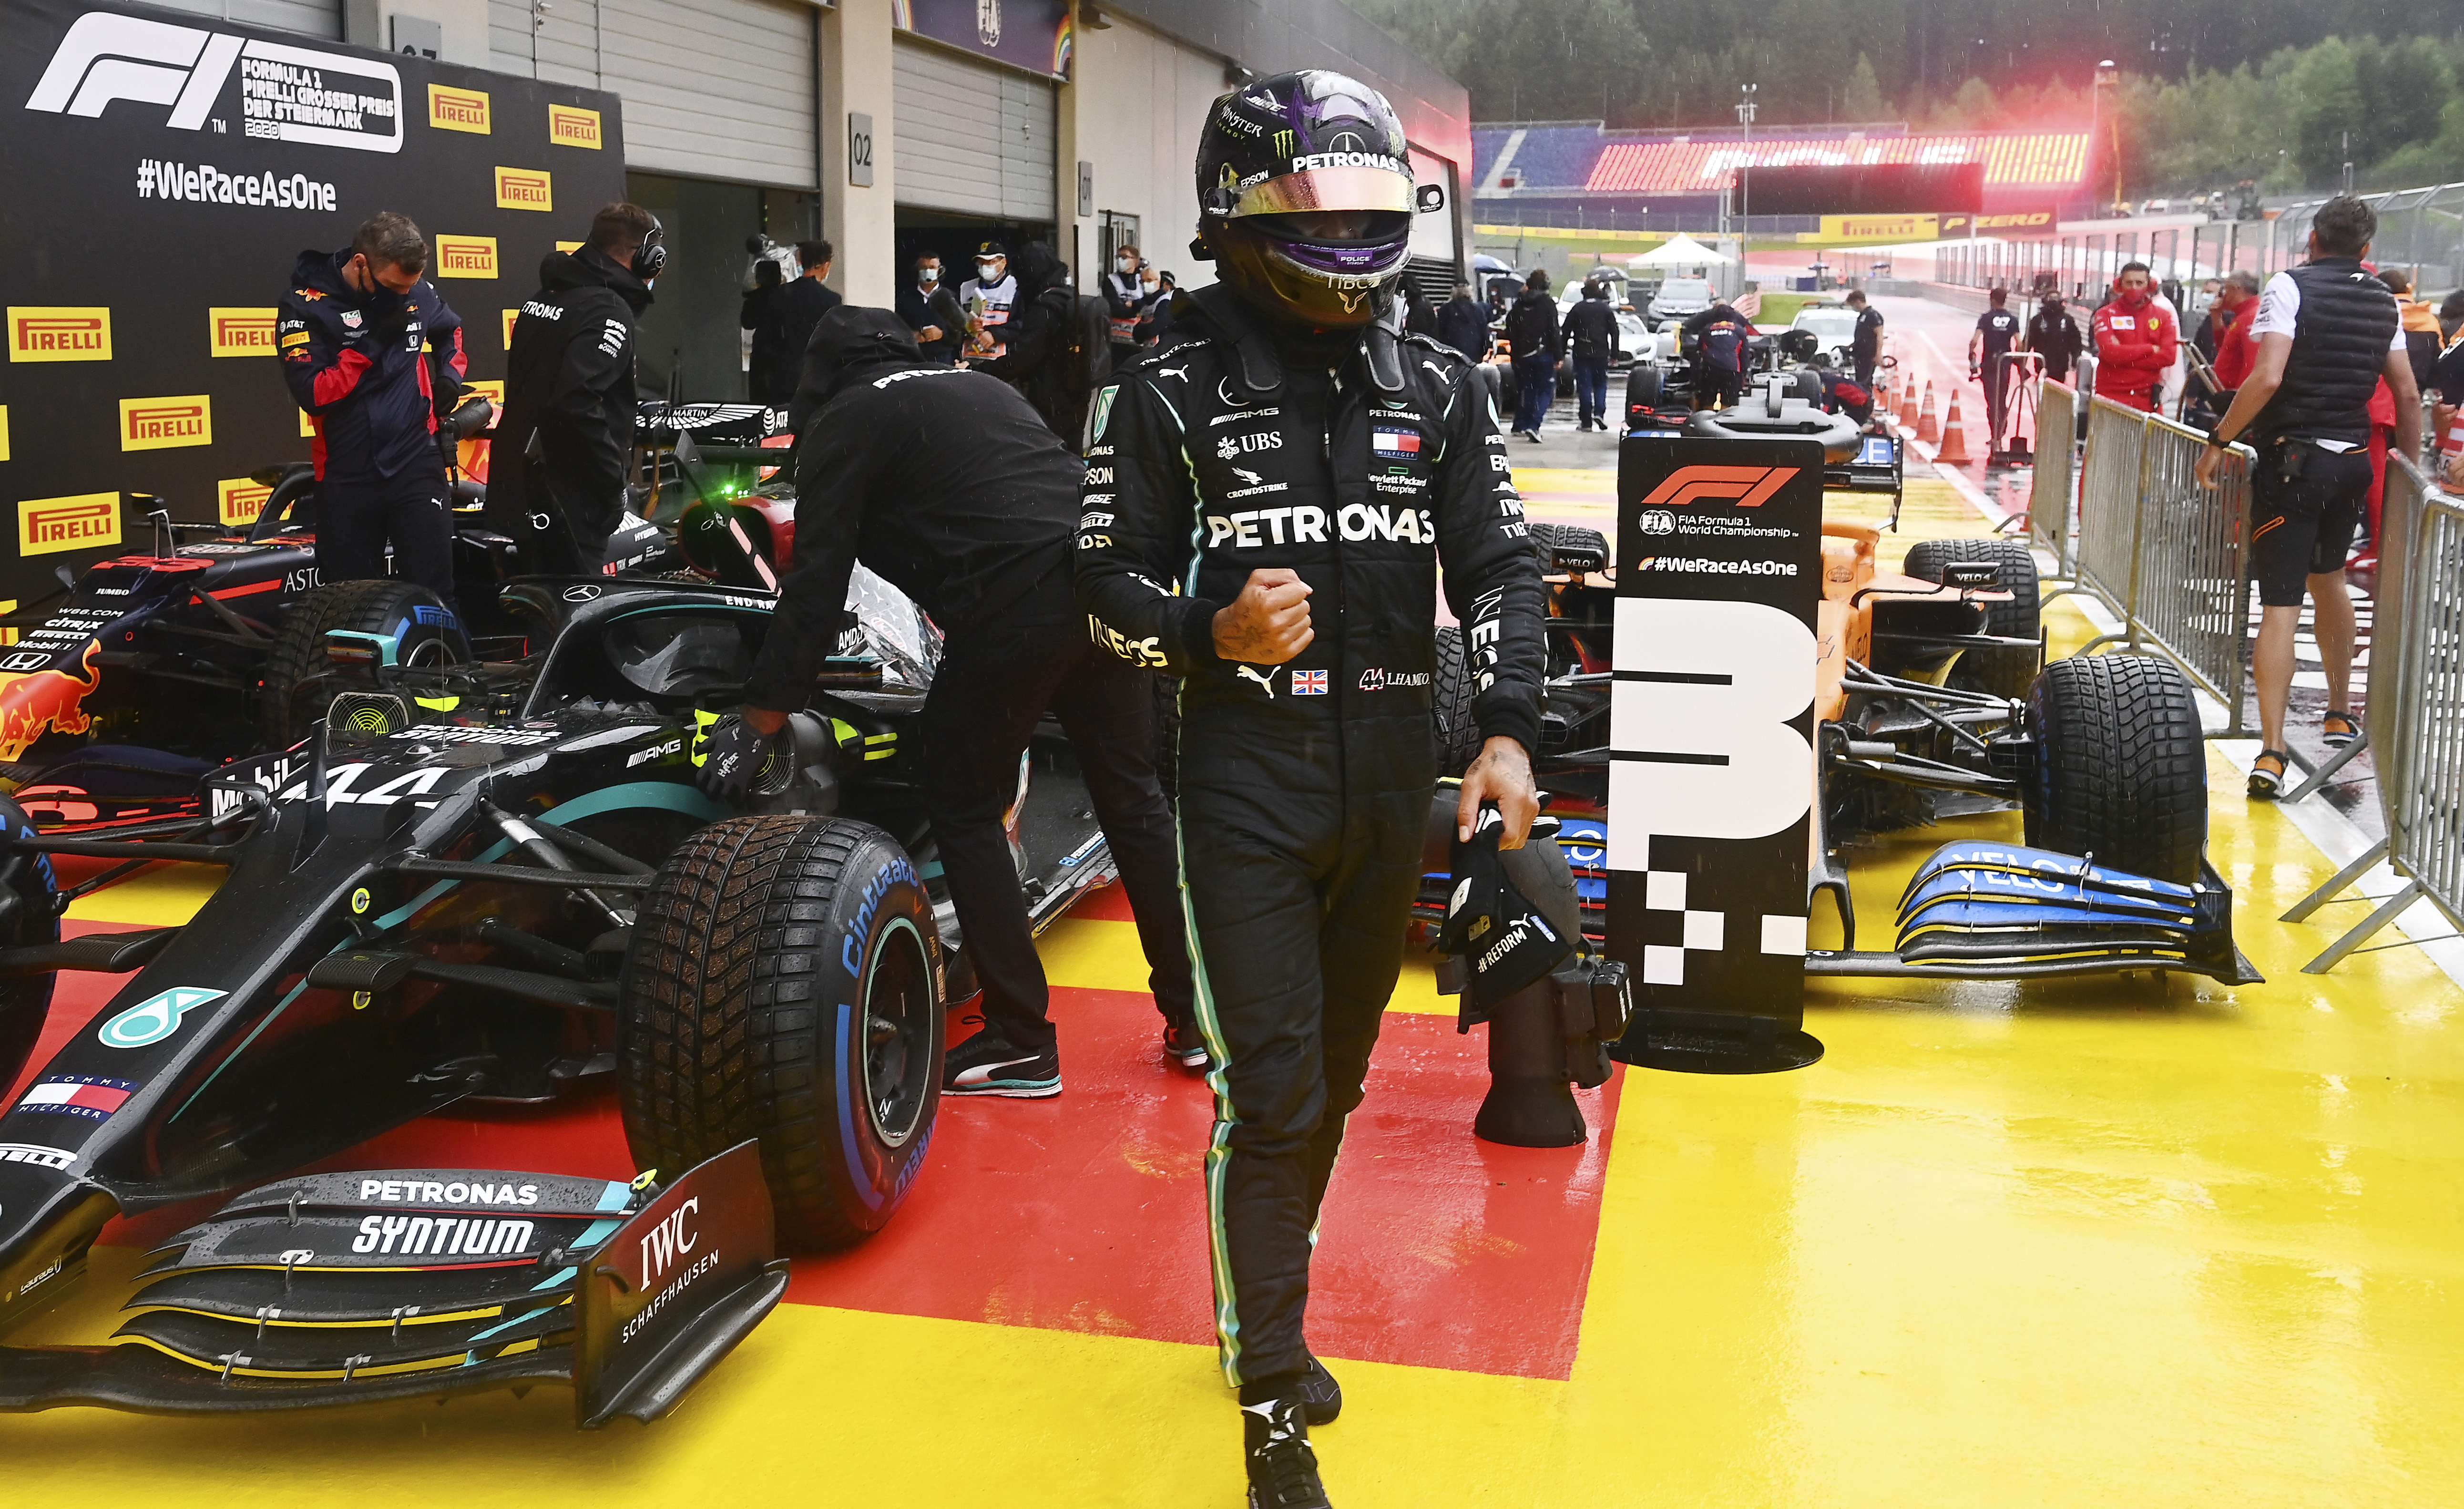 汉密尔顿在F1施蒂利亚站排位赛拿下个人这赛季首个杆位，他直言自己在最后1圈达成“人车合一”。图为汉密尔顿赛后握拳庆祝。（美联社照片）

